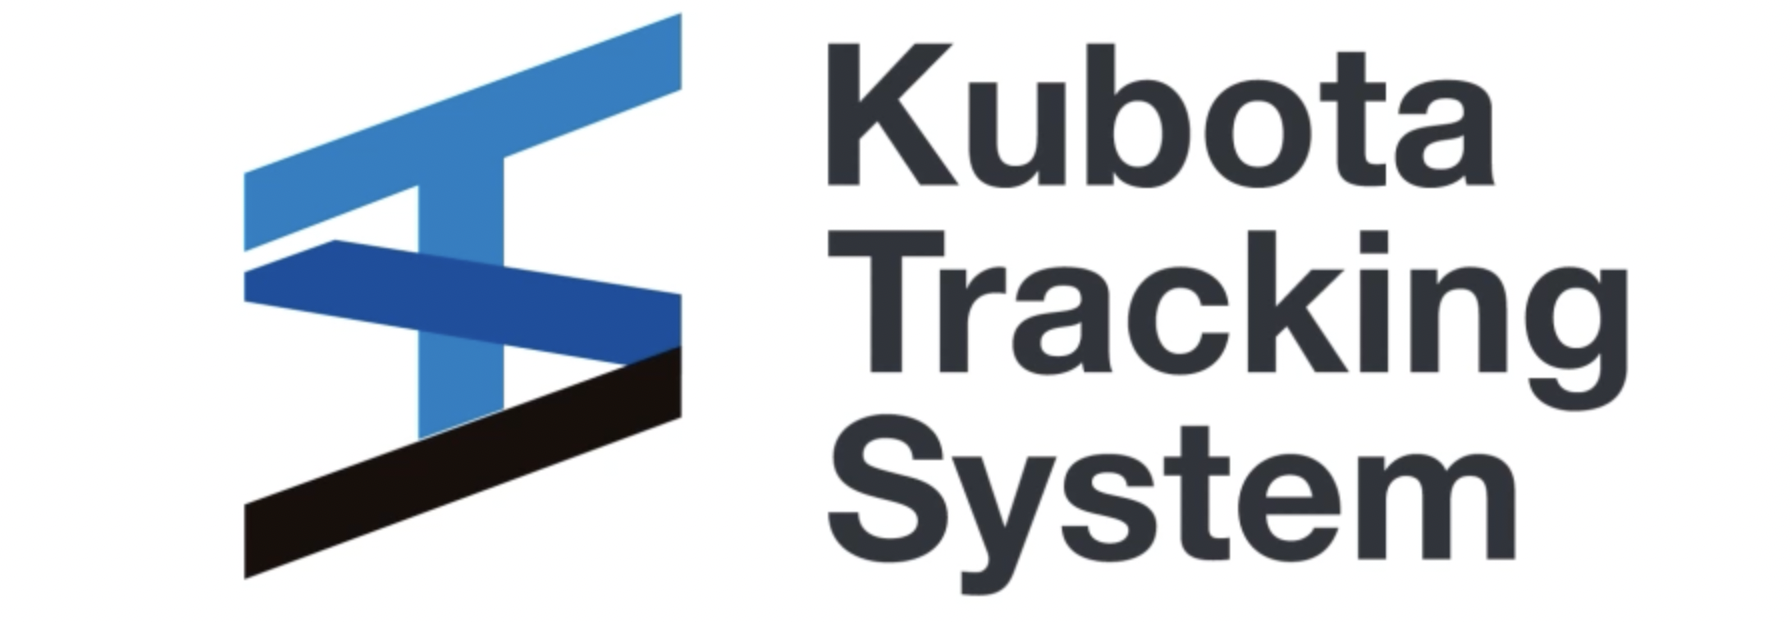 Kubota tracking system